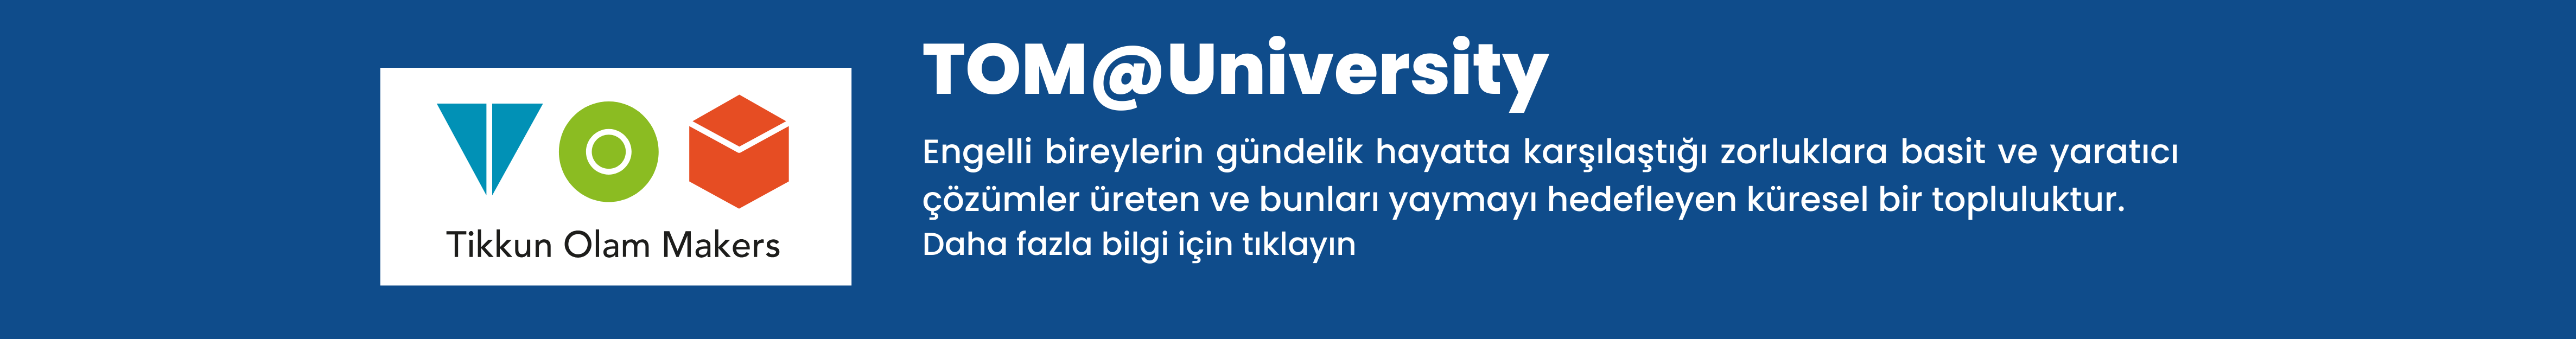 Tom@University